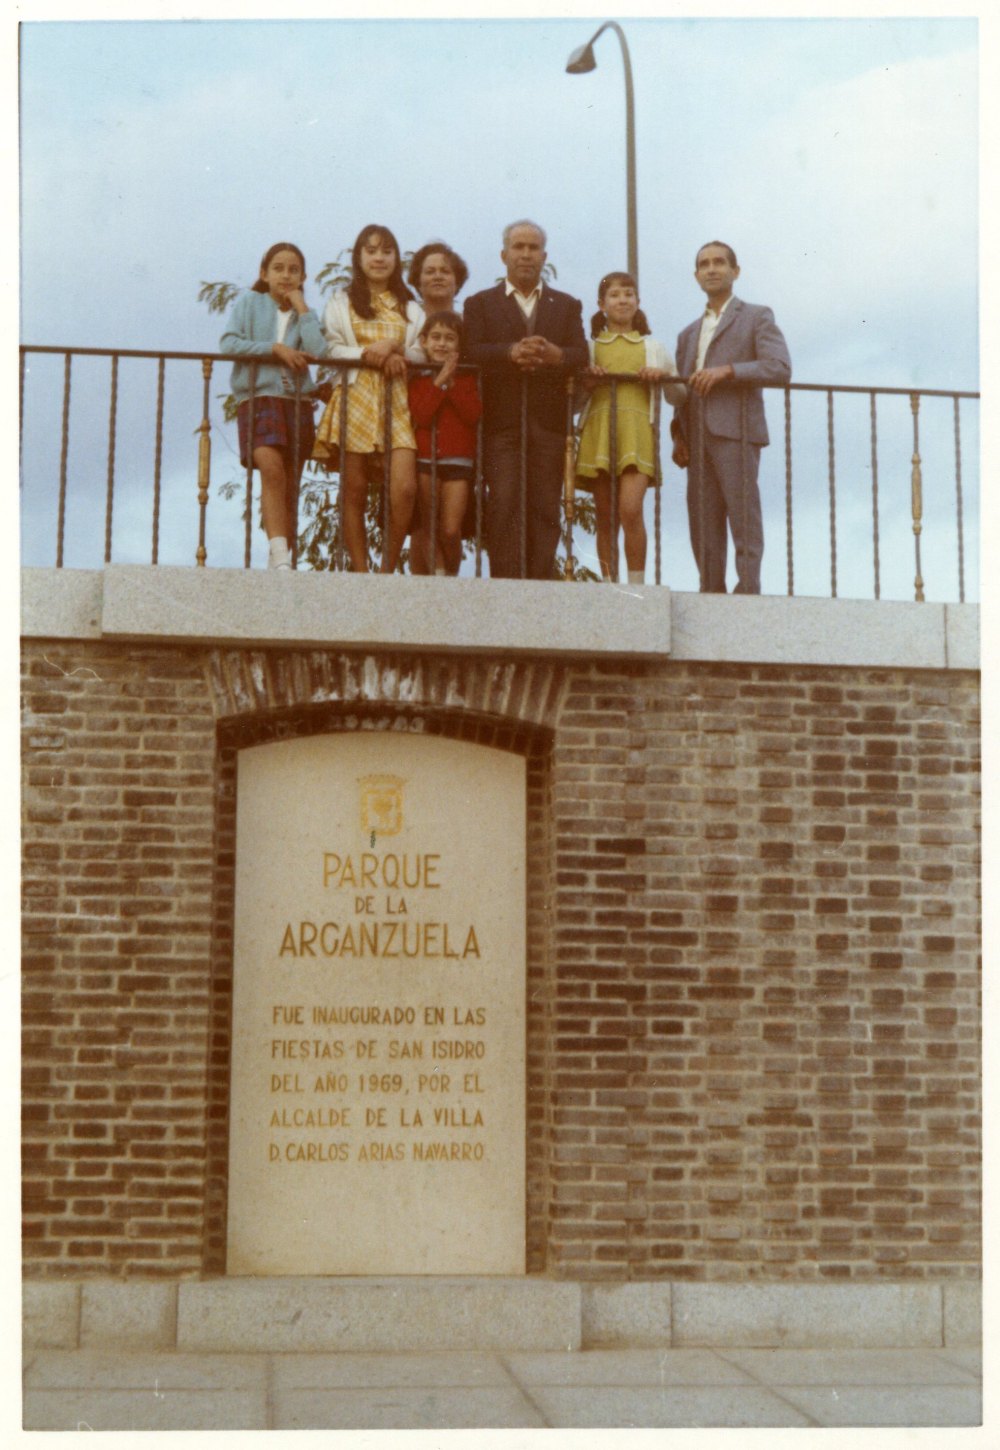 Lápida conmemorativa de la inauguración del Parque de la Arganzuela